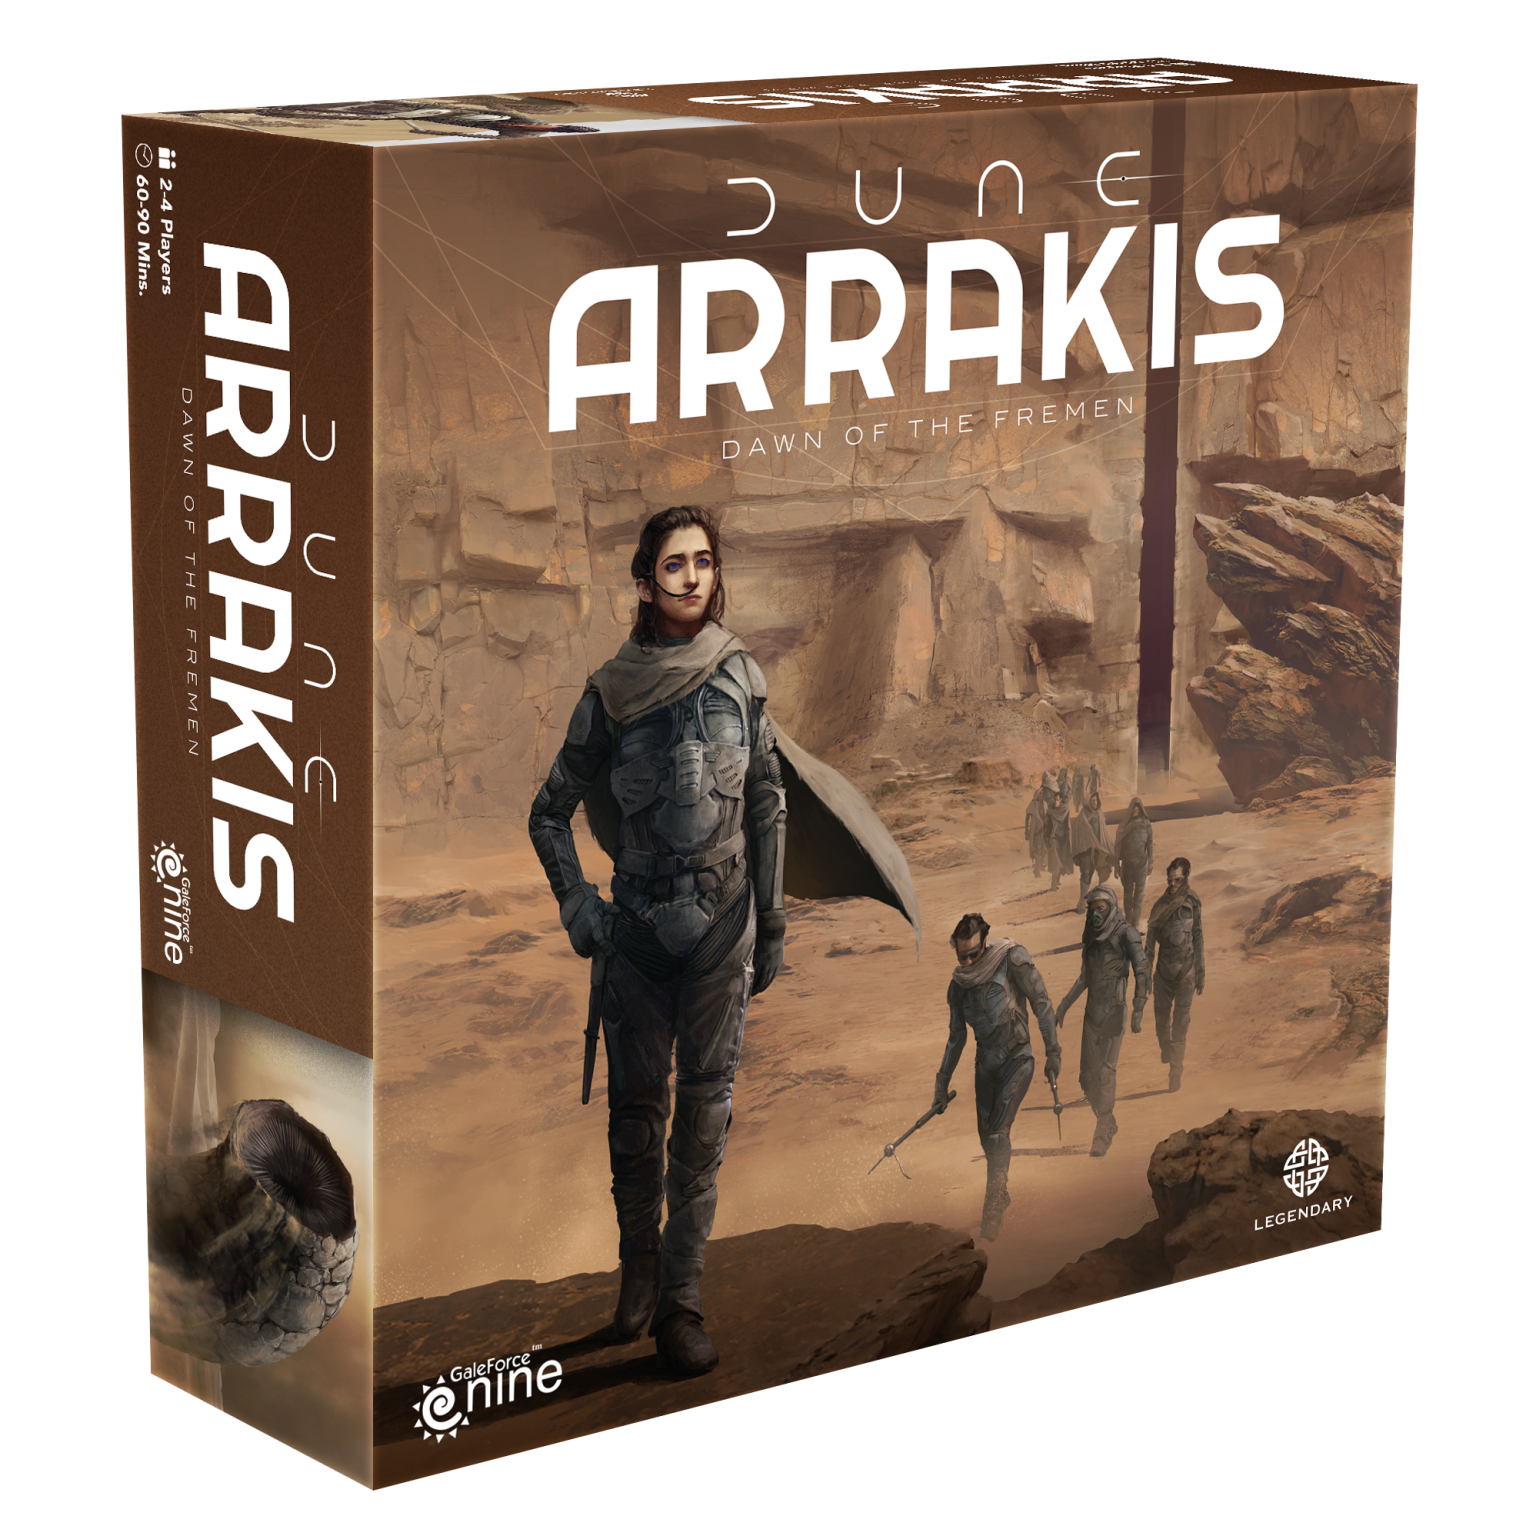 Dune Arakis: Dawn of the Fremen